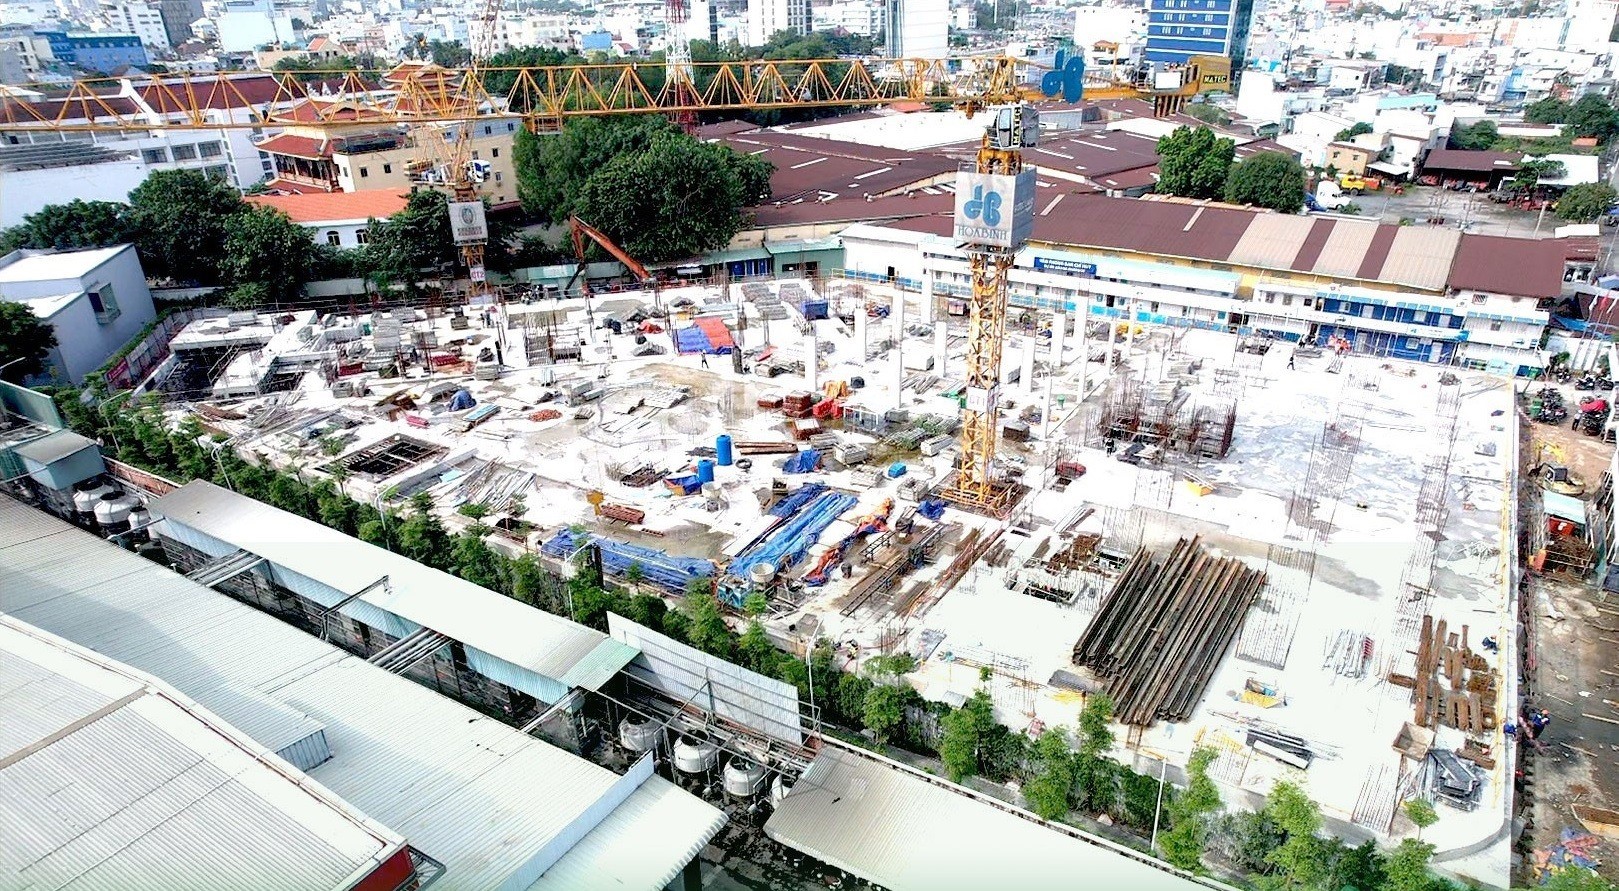 
Dự án này Khu trung tâm thương mại và căn hộ cao cấp tại đường Bến Nghé, phường Tân Thuận Đông, quận 7, TP Hồ Chí Minh.
